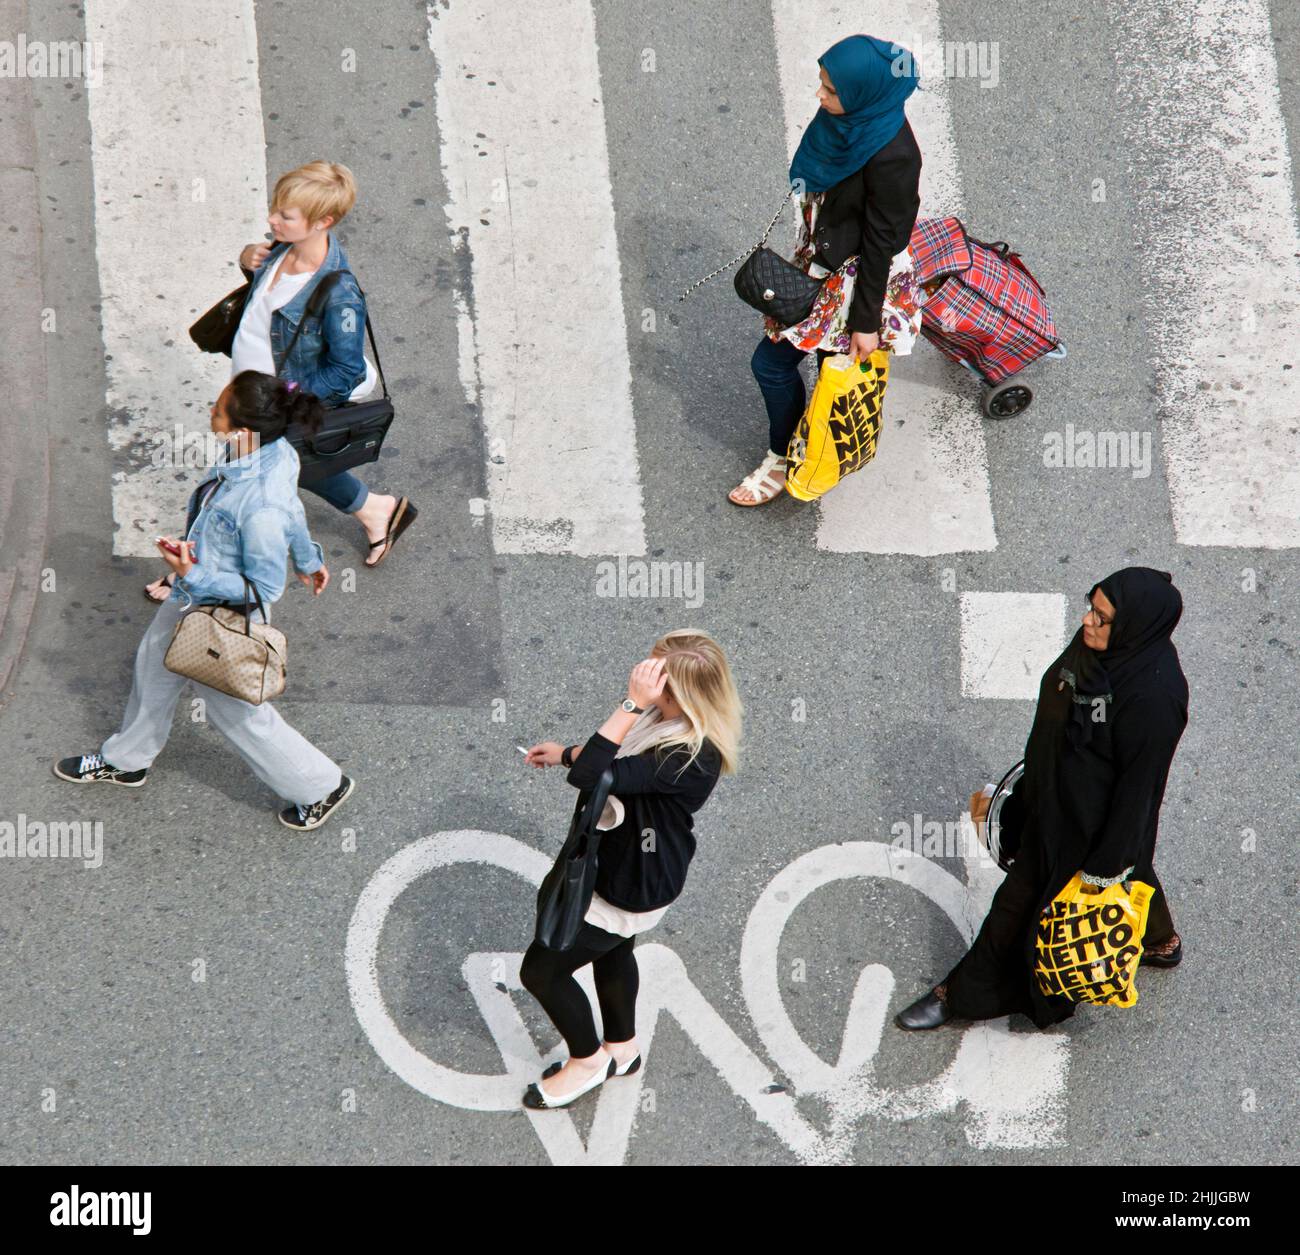 Integrazione e immigrazione. Keywords: Donna araba con sciarpa che trasporta la borsa di plastica straniera residenti metropolitani cittadini danesi Danimarca Copenaghen Foto Stock